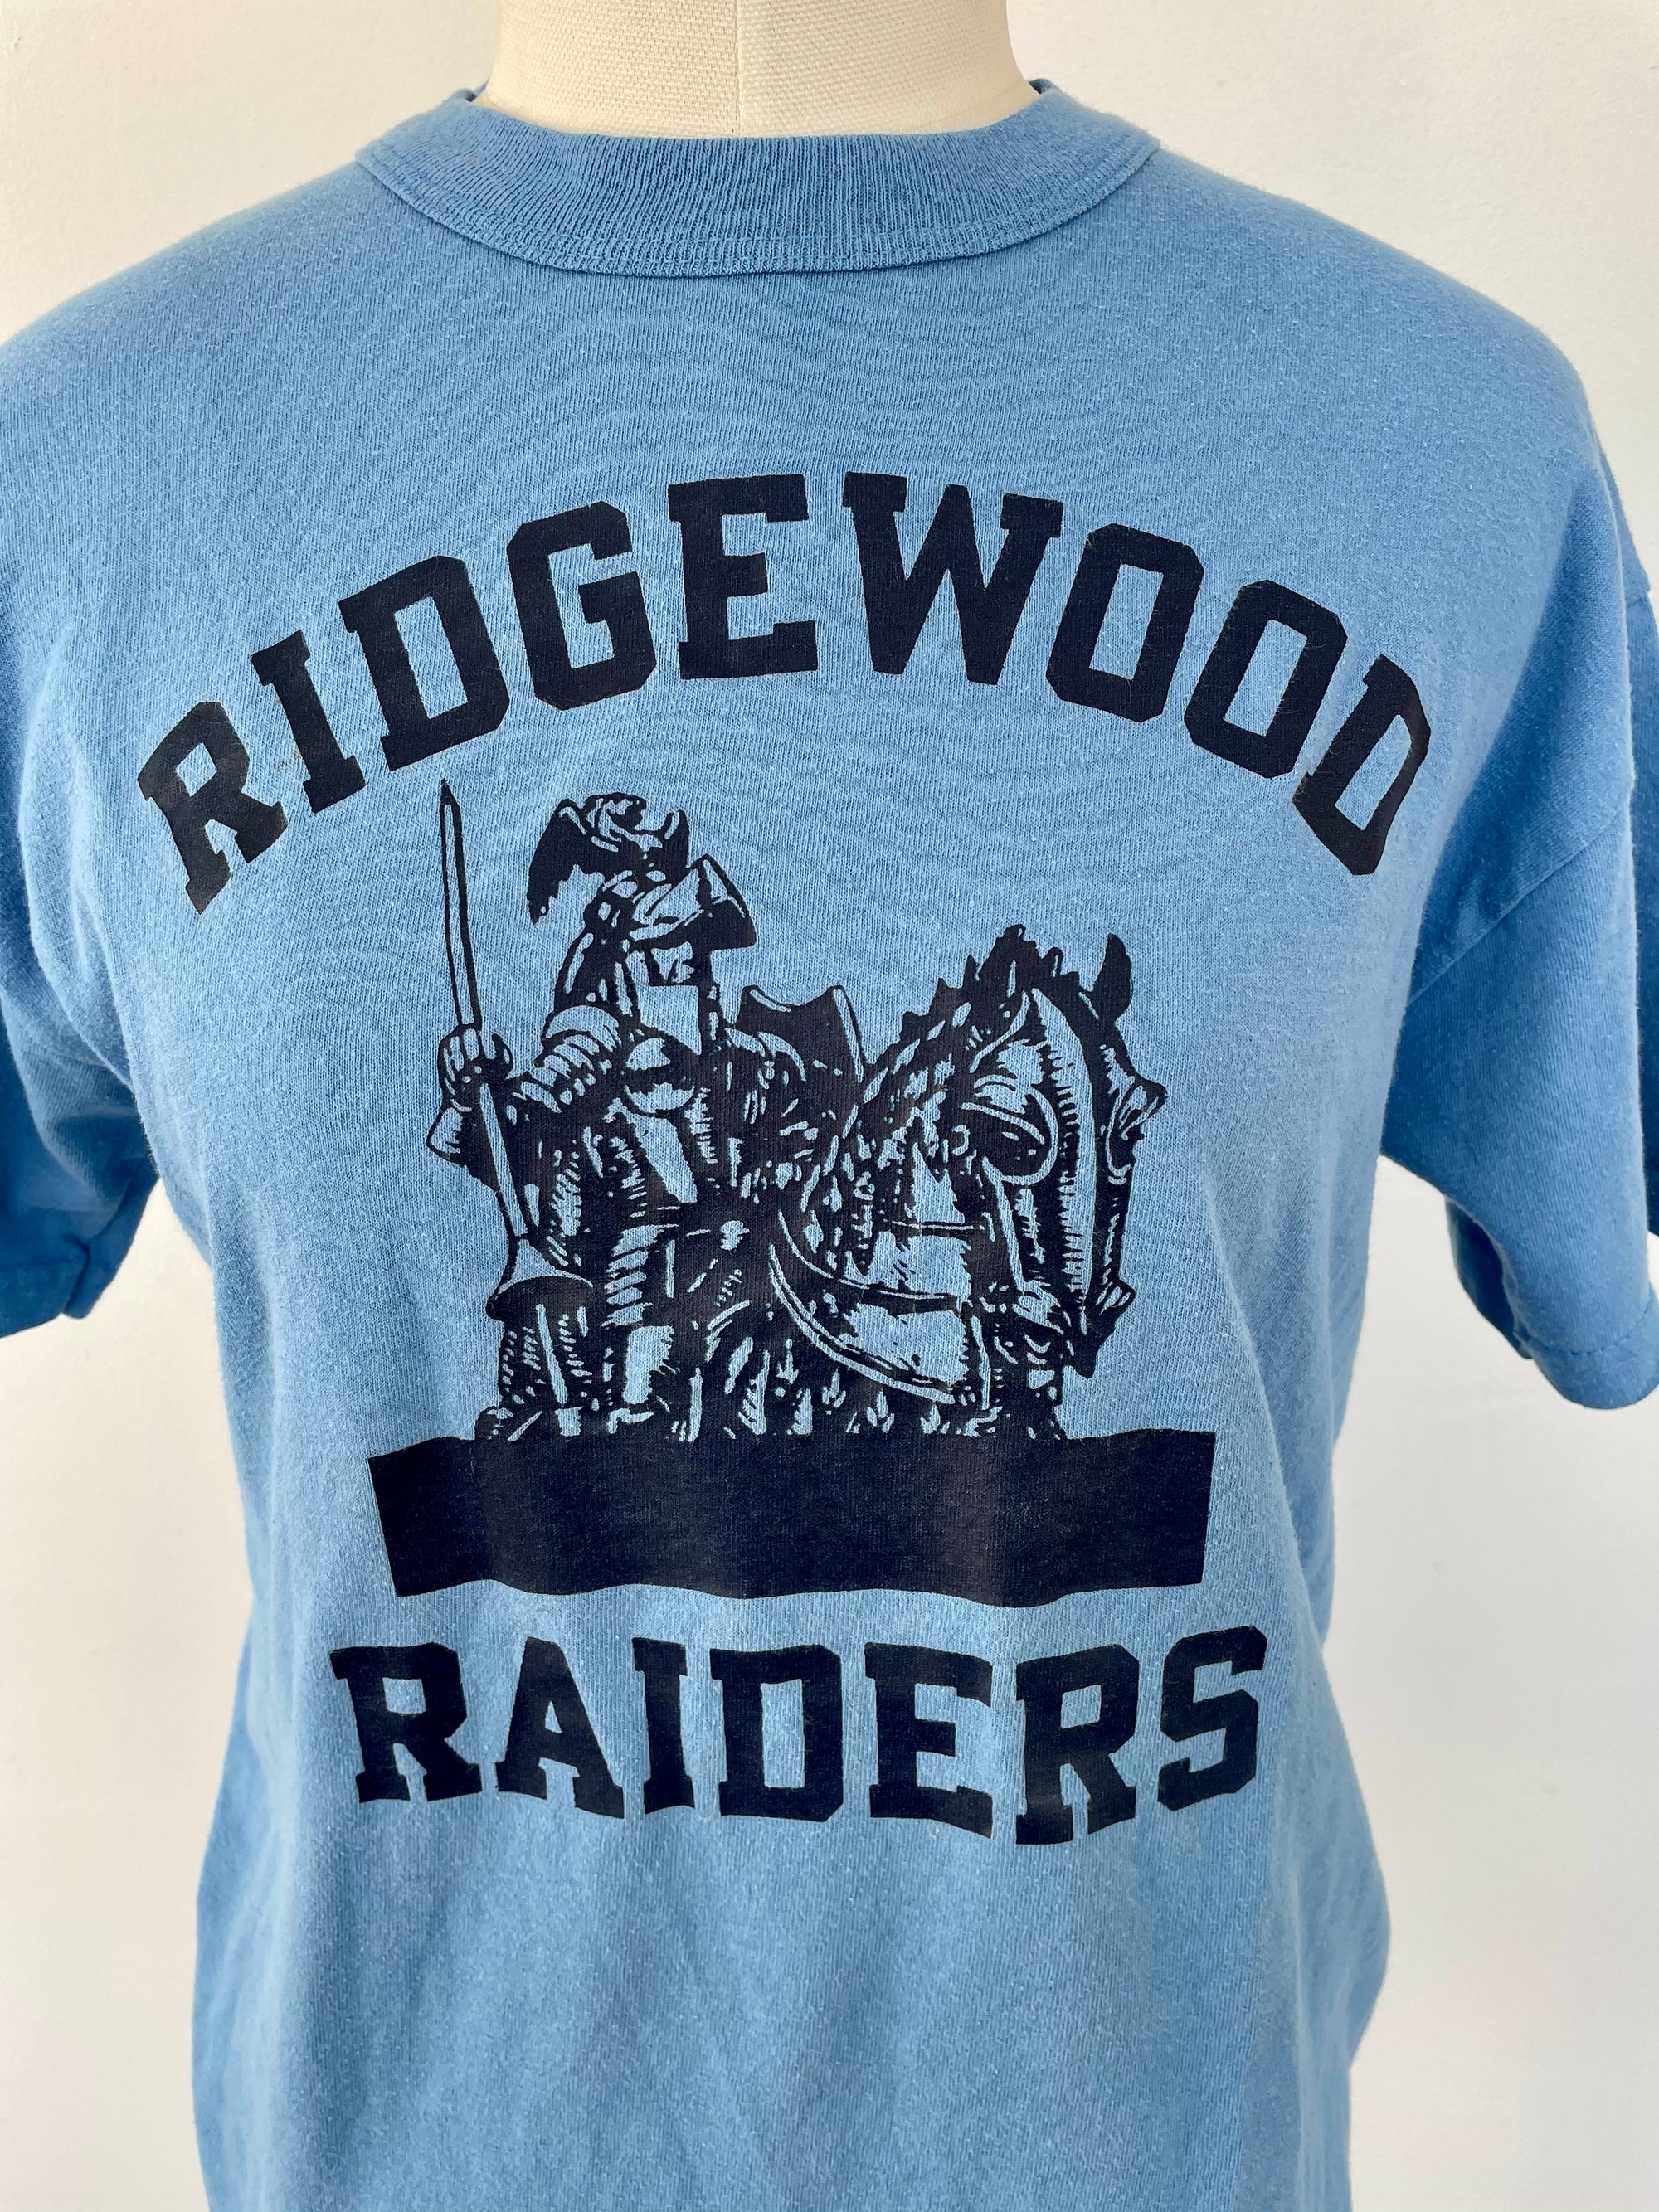 Vintage "Ridgewood Raiders" Graphic Tee